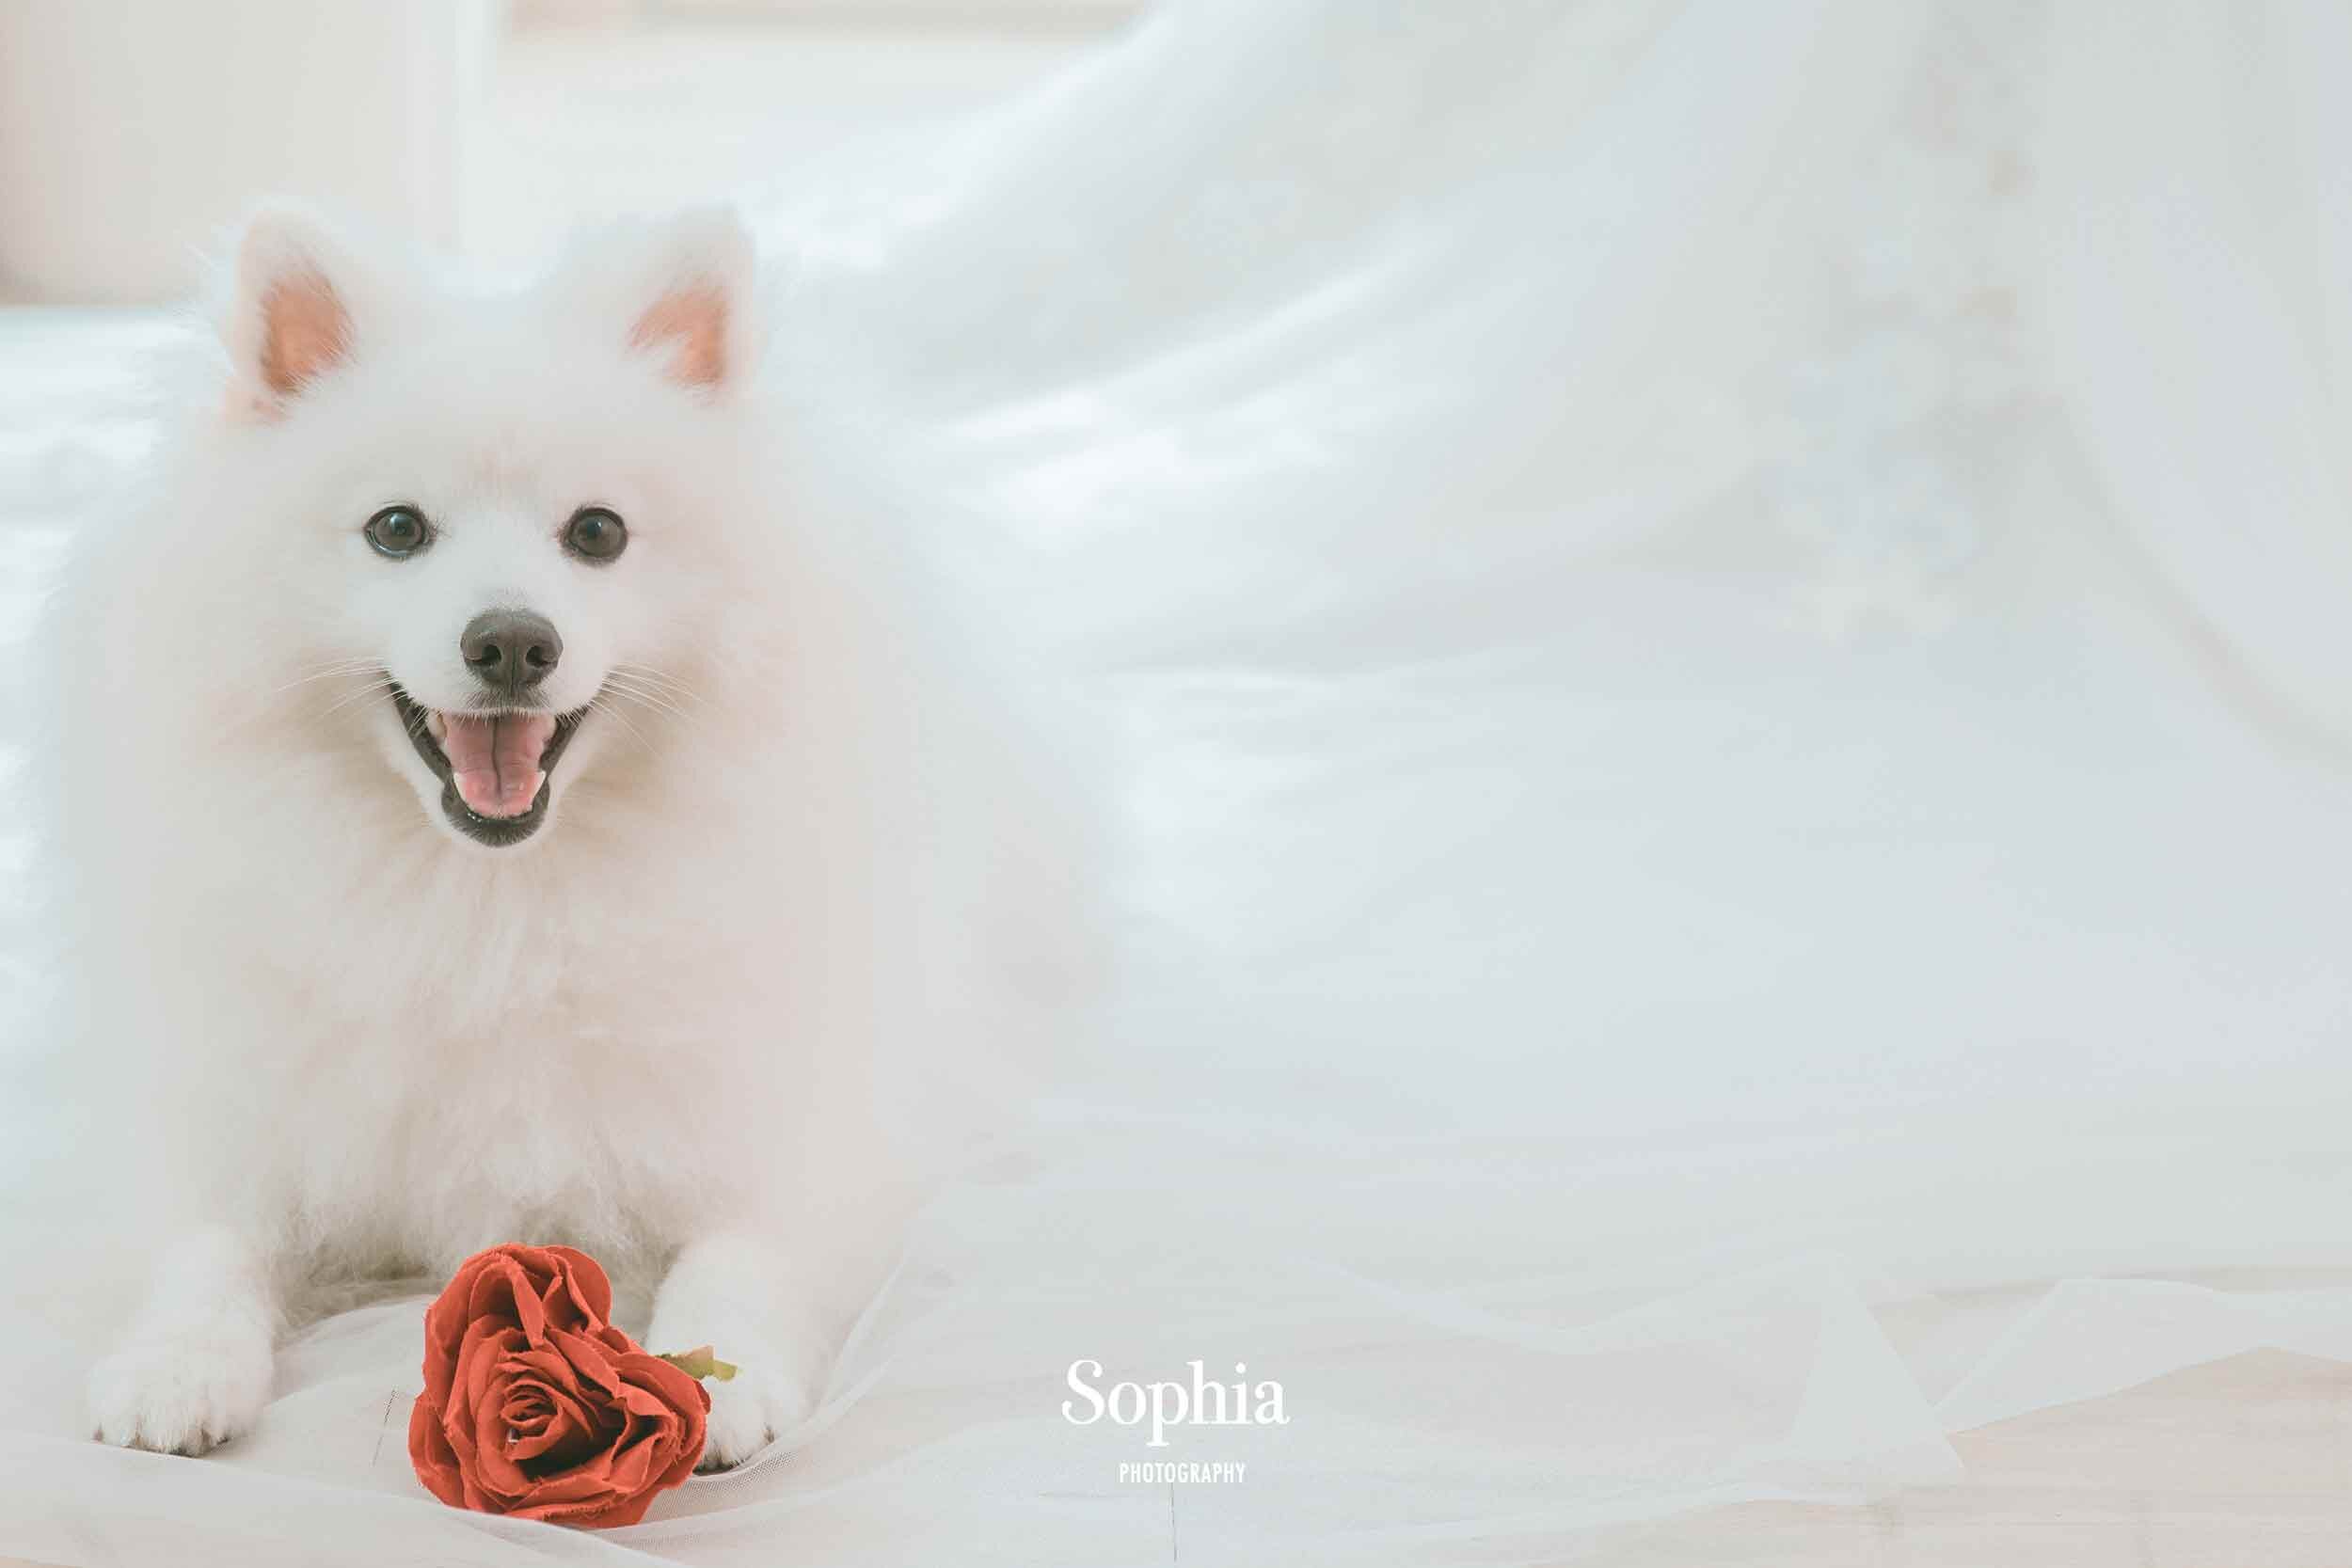  蘇菲雅婚紗-內景寵物照 